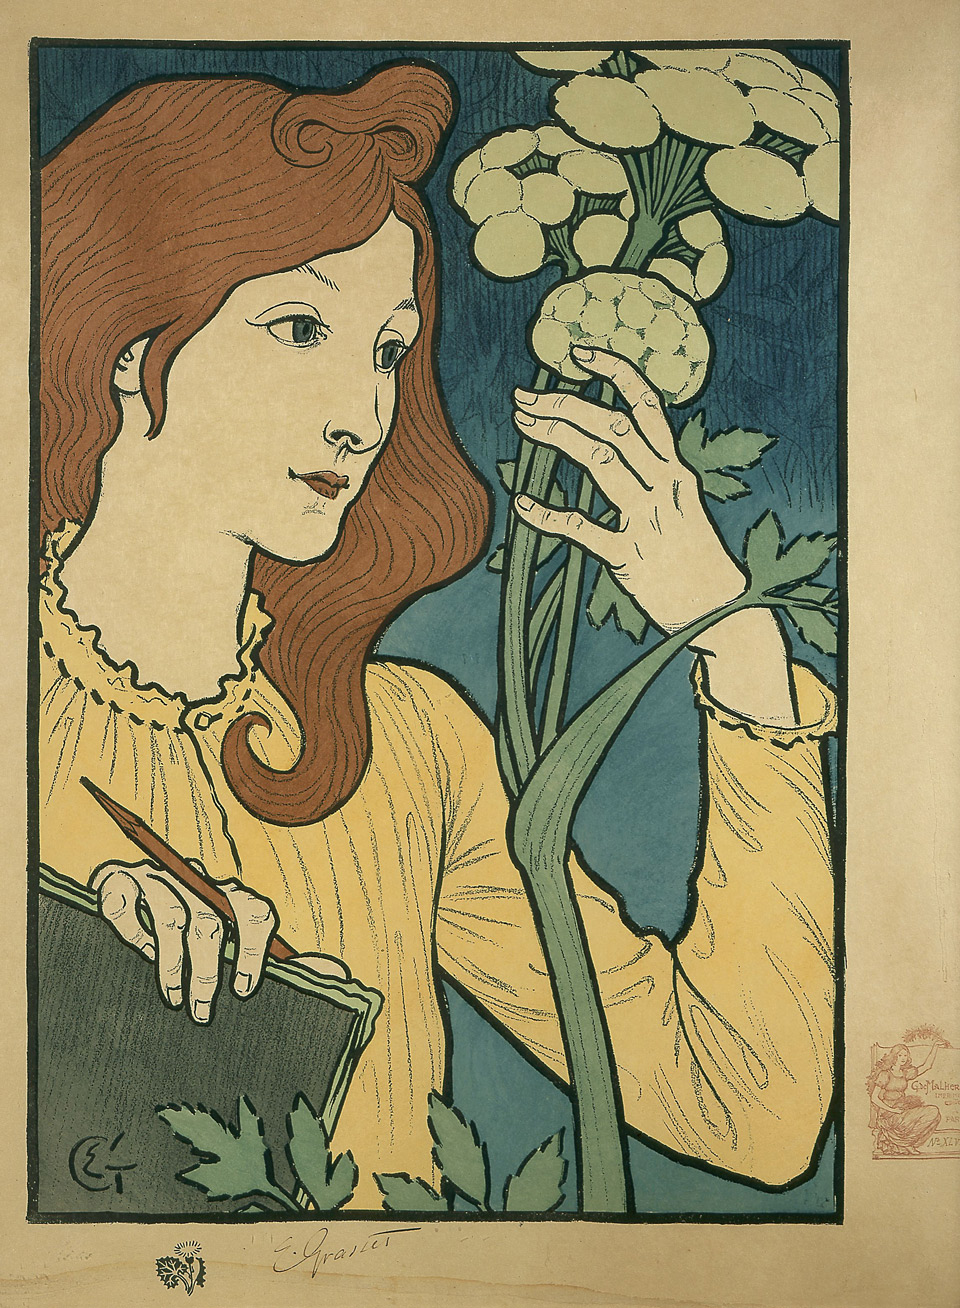 Eugène Grasset: Salon des Cent – avant la lettre, 1894